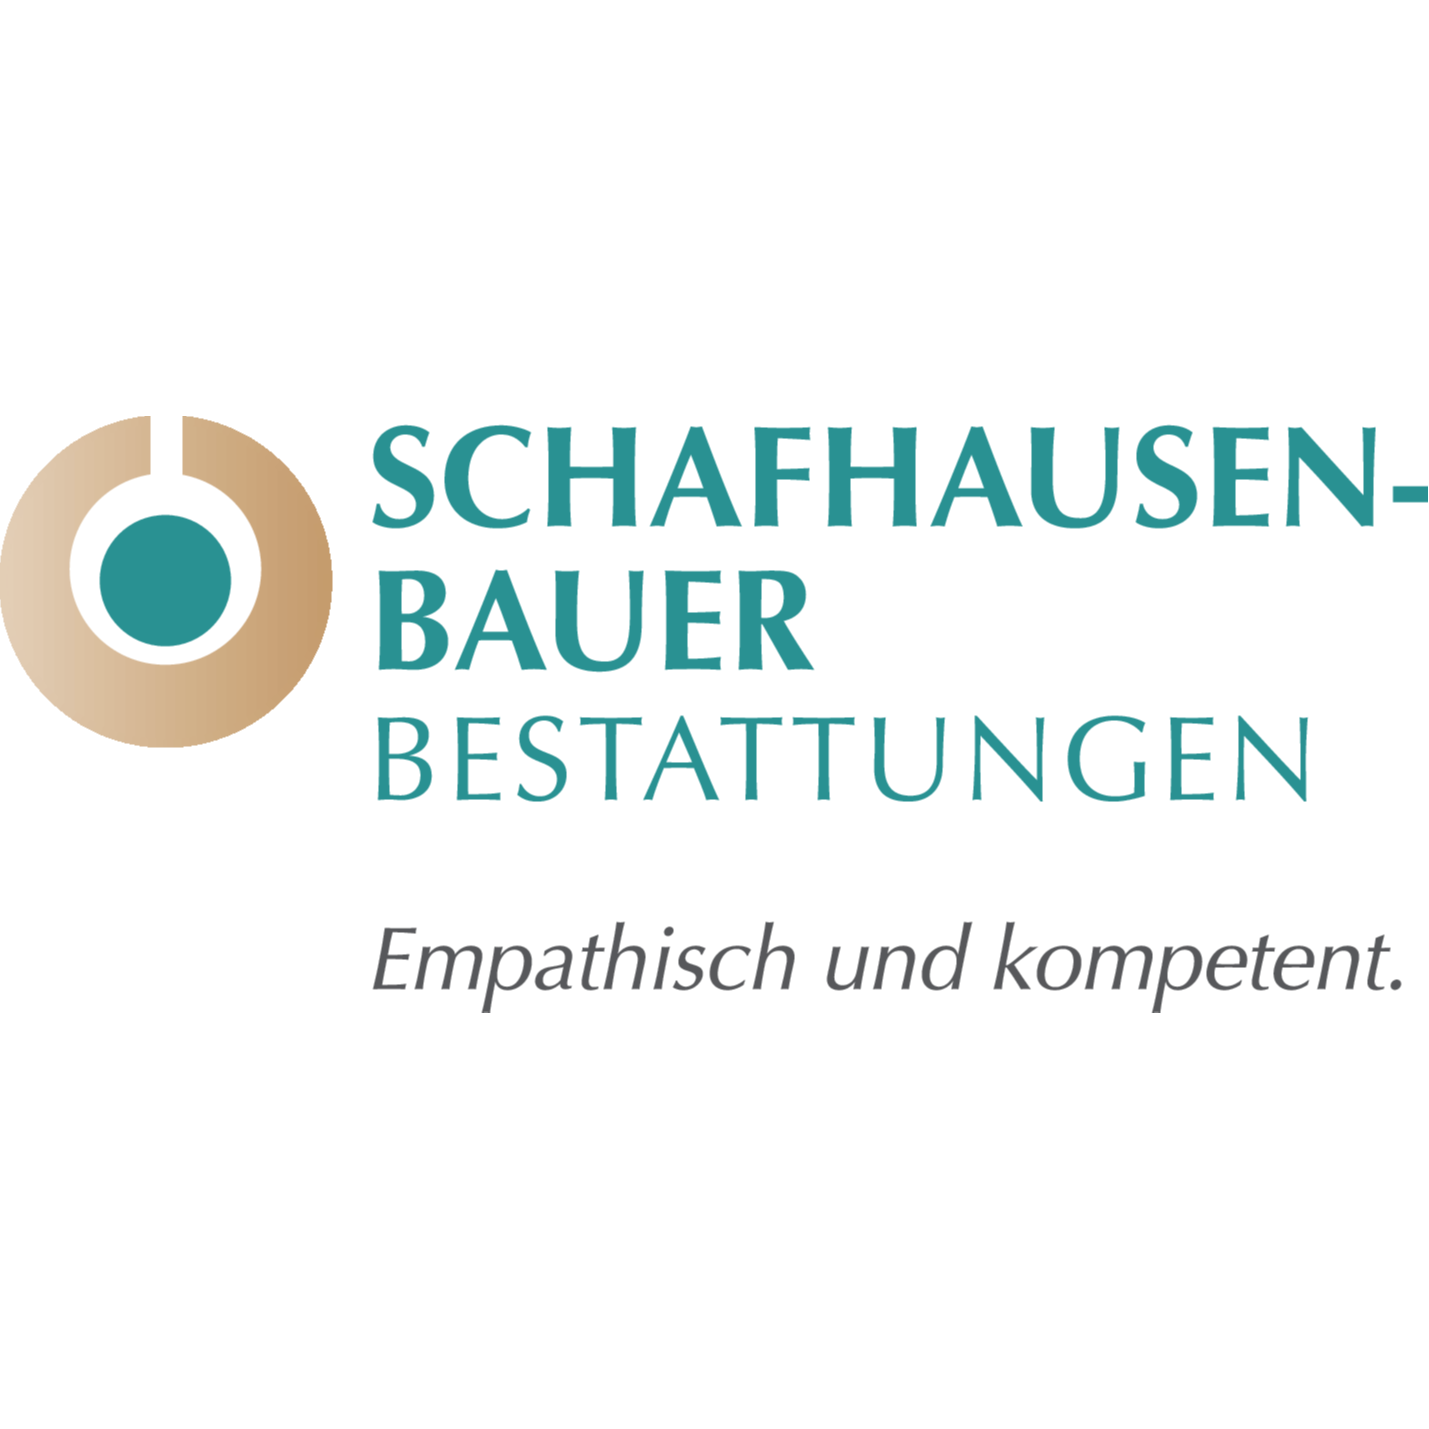 Schafhausen-Bauer Bestattungen  